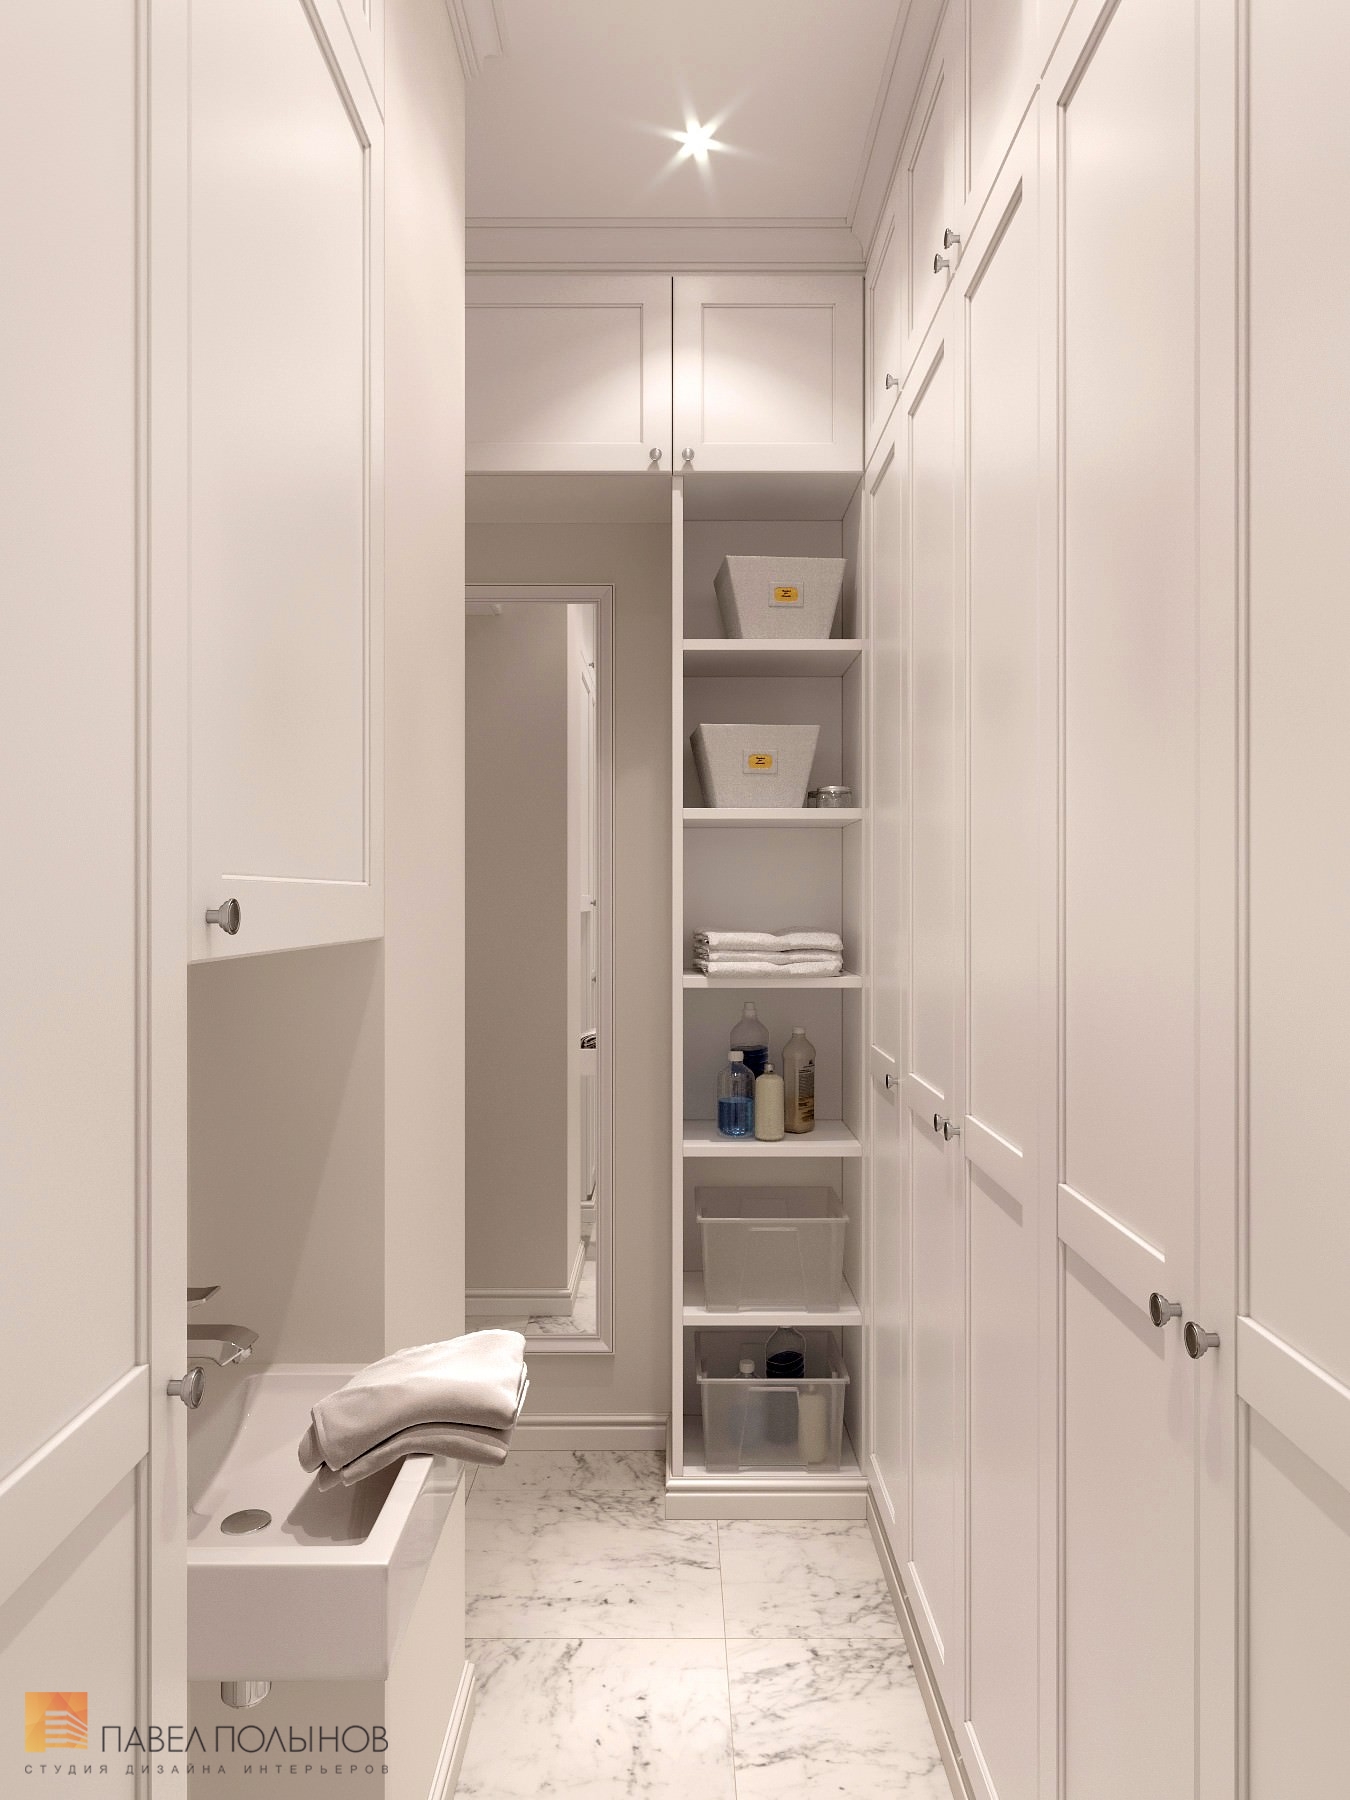 Фото дизайн хозяйственной комнаты из проекта «Интерьер квартиры в стиле американской классики, ЖК «Duderhof club», 188 кв.м.»